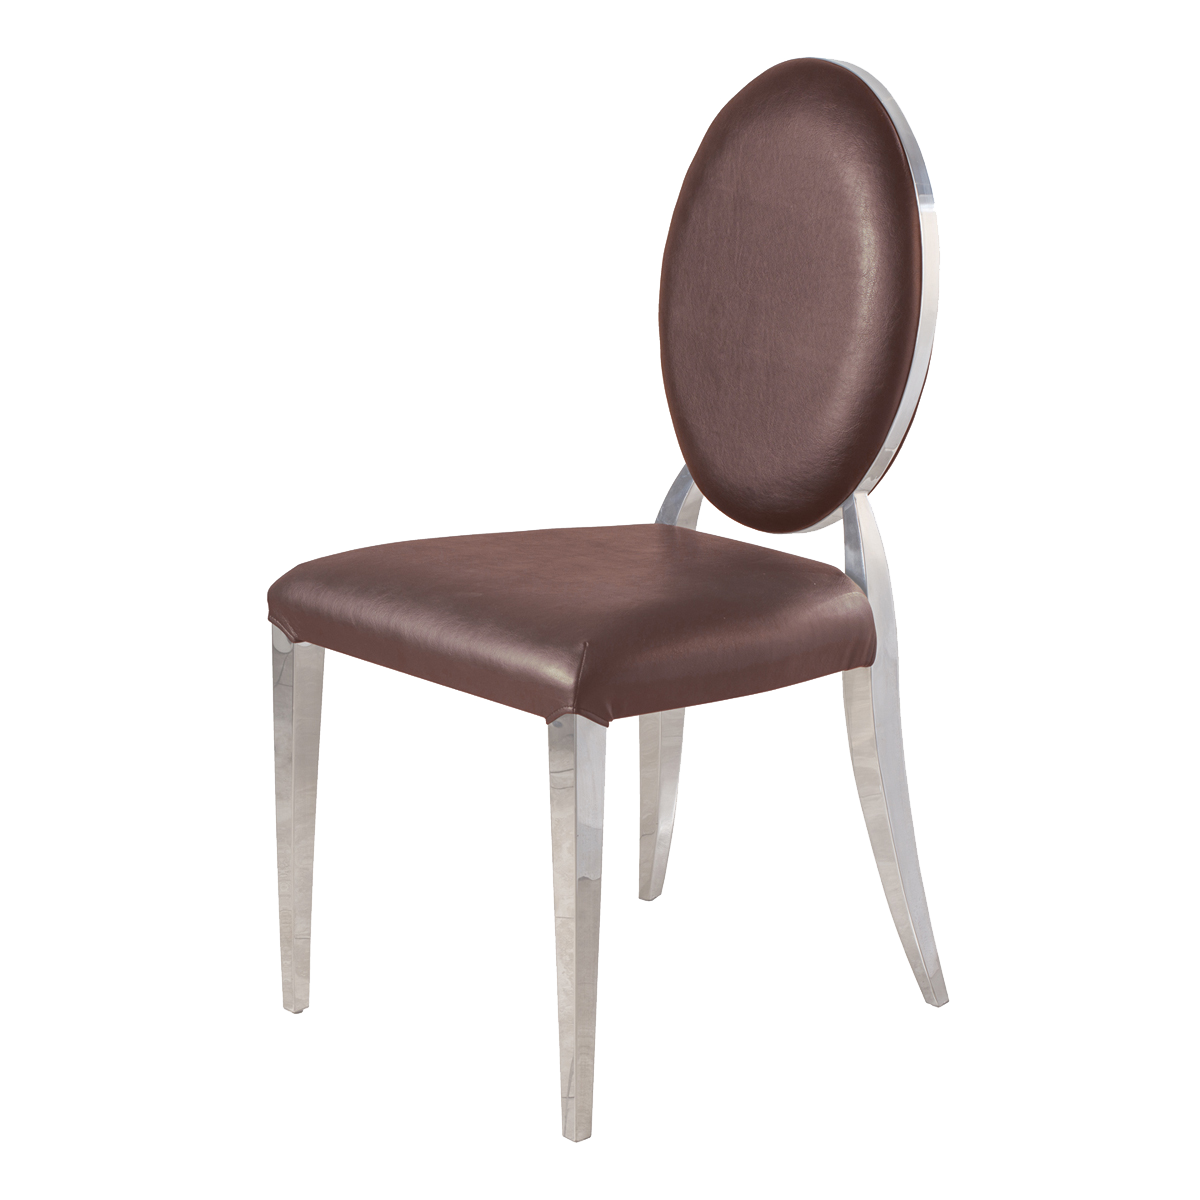 Whale Spa Chocolate Waiting Chair 8030 Nail Salon Customer Chair | Salon and Spa Furniture